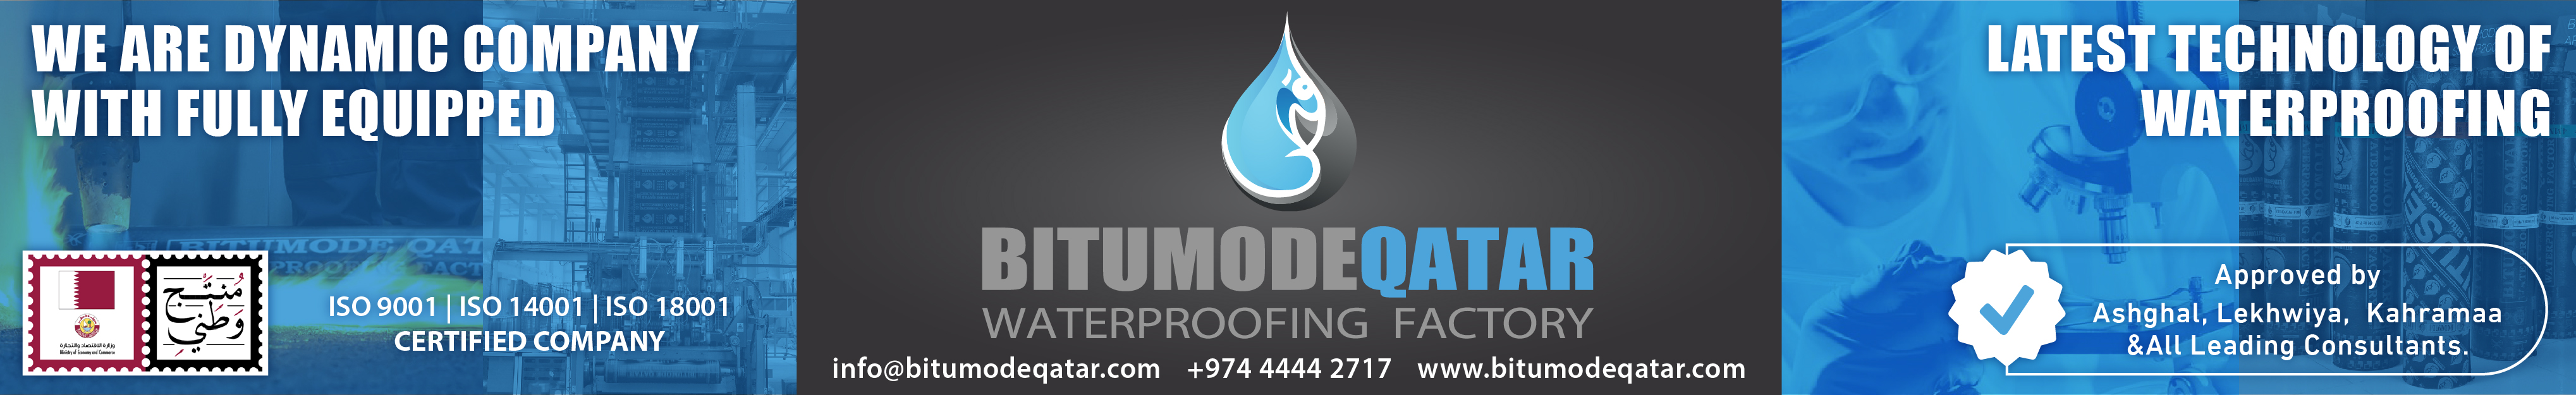 BITUMODE QATAR WATERPROOFING FACTORY in Doha Qatar